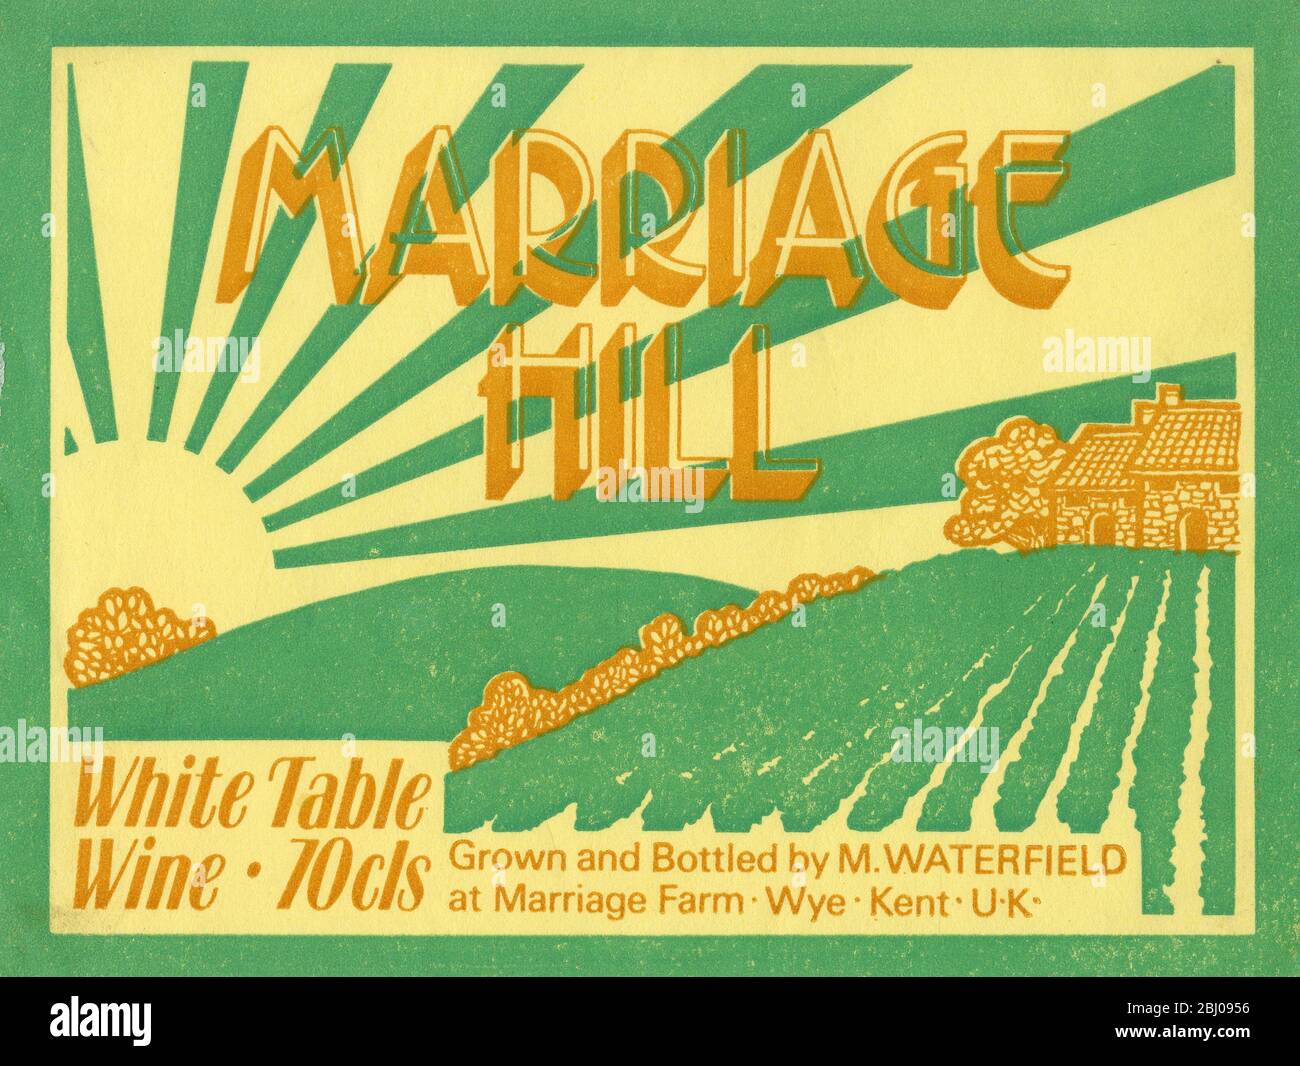 Weinetikett. - Heiratshügel. Weißer Tafelwein 70 cl. - angebaut und abgefüllt von M.Waterfield auf der Marriage Farm, Wye Kent, UK. Stockfoto